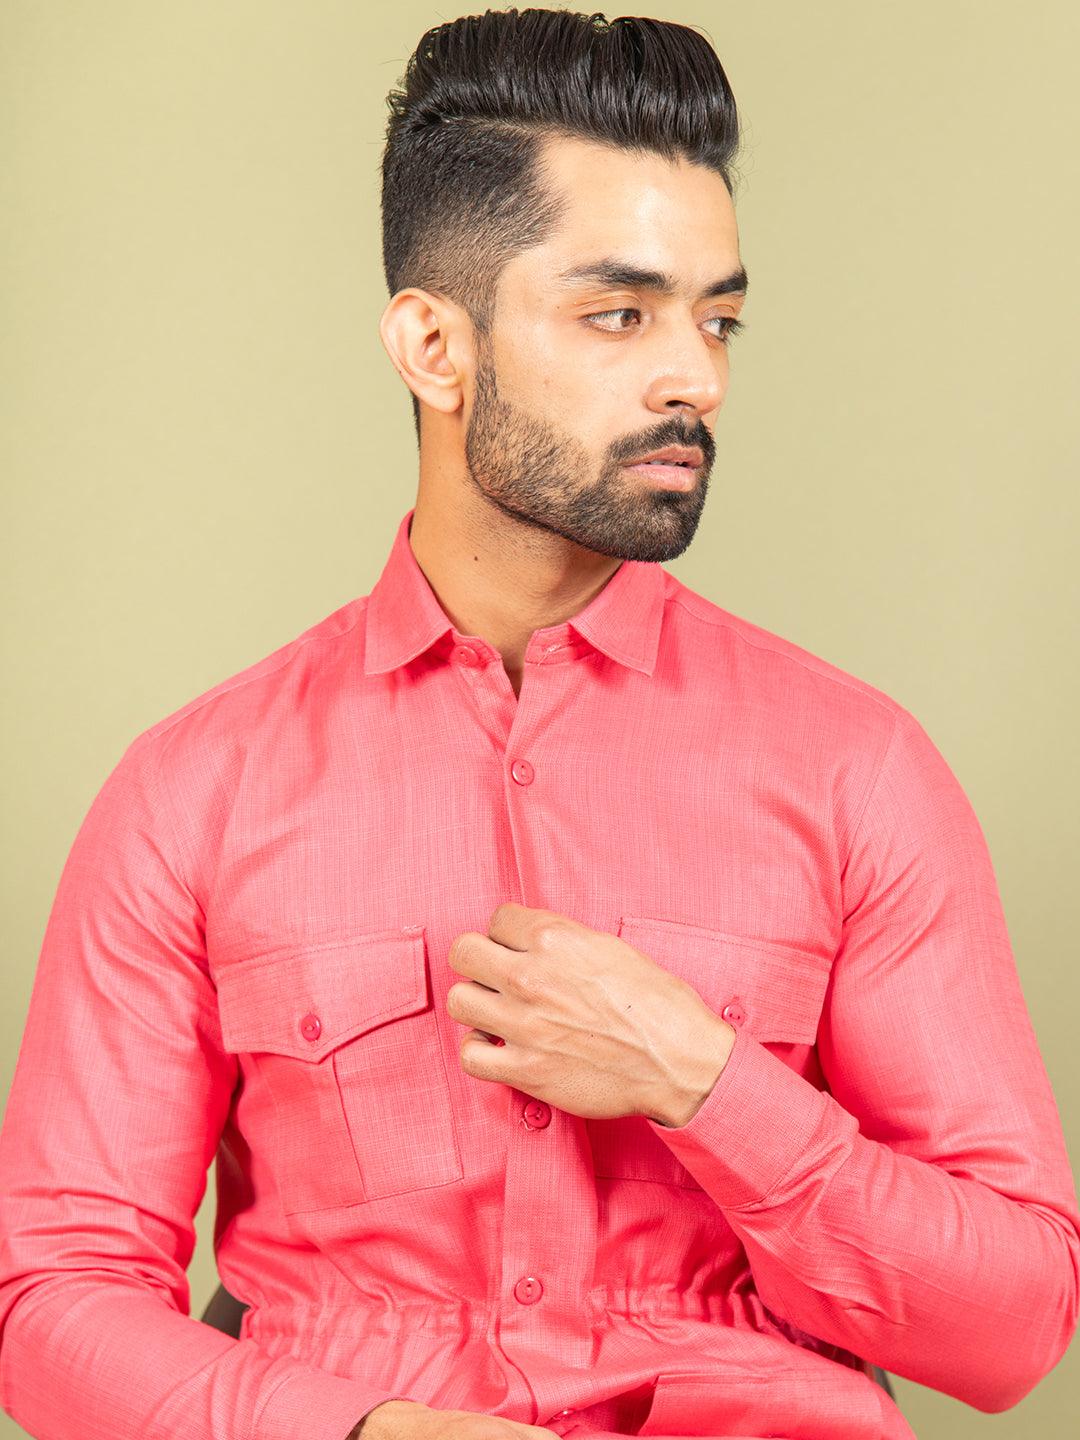 Pink Orion 4 Pocket Linen Shirt - Tistabene